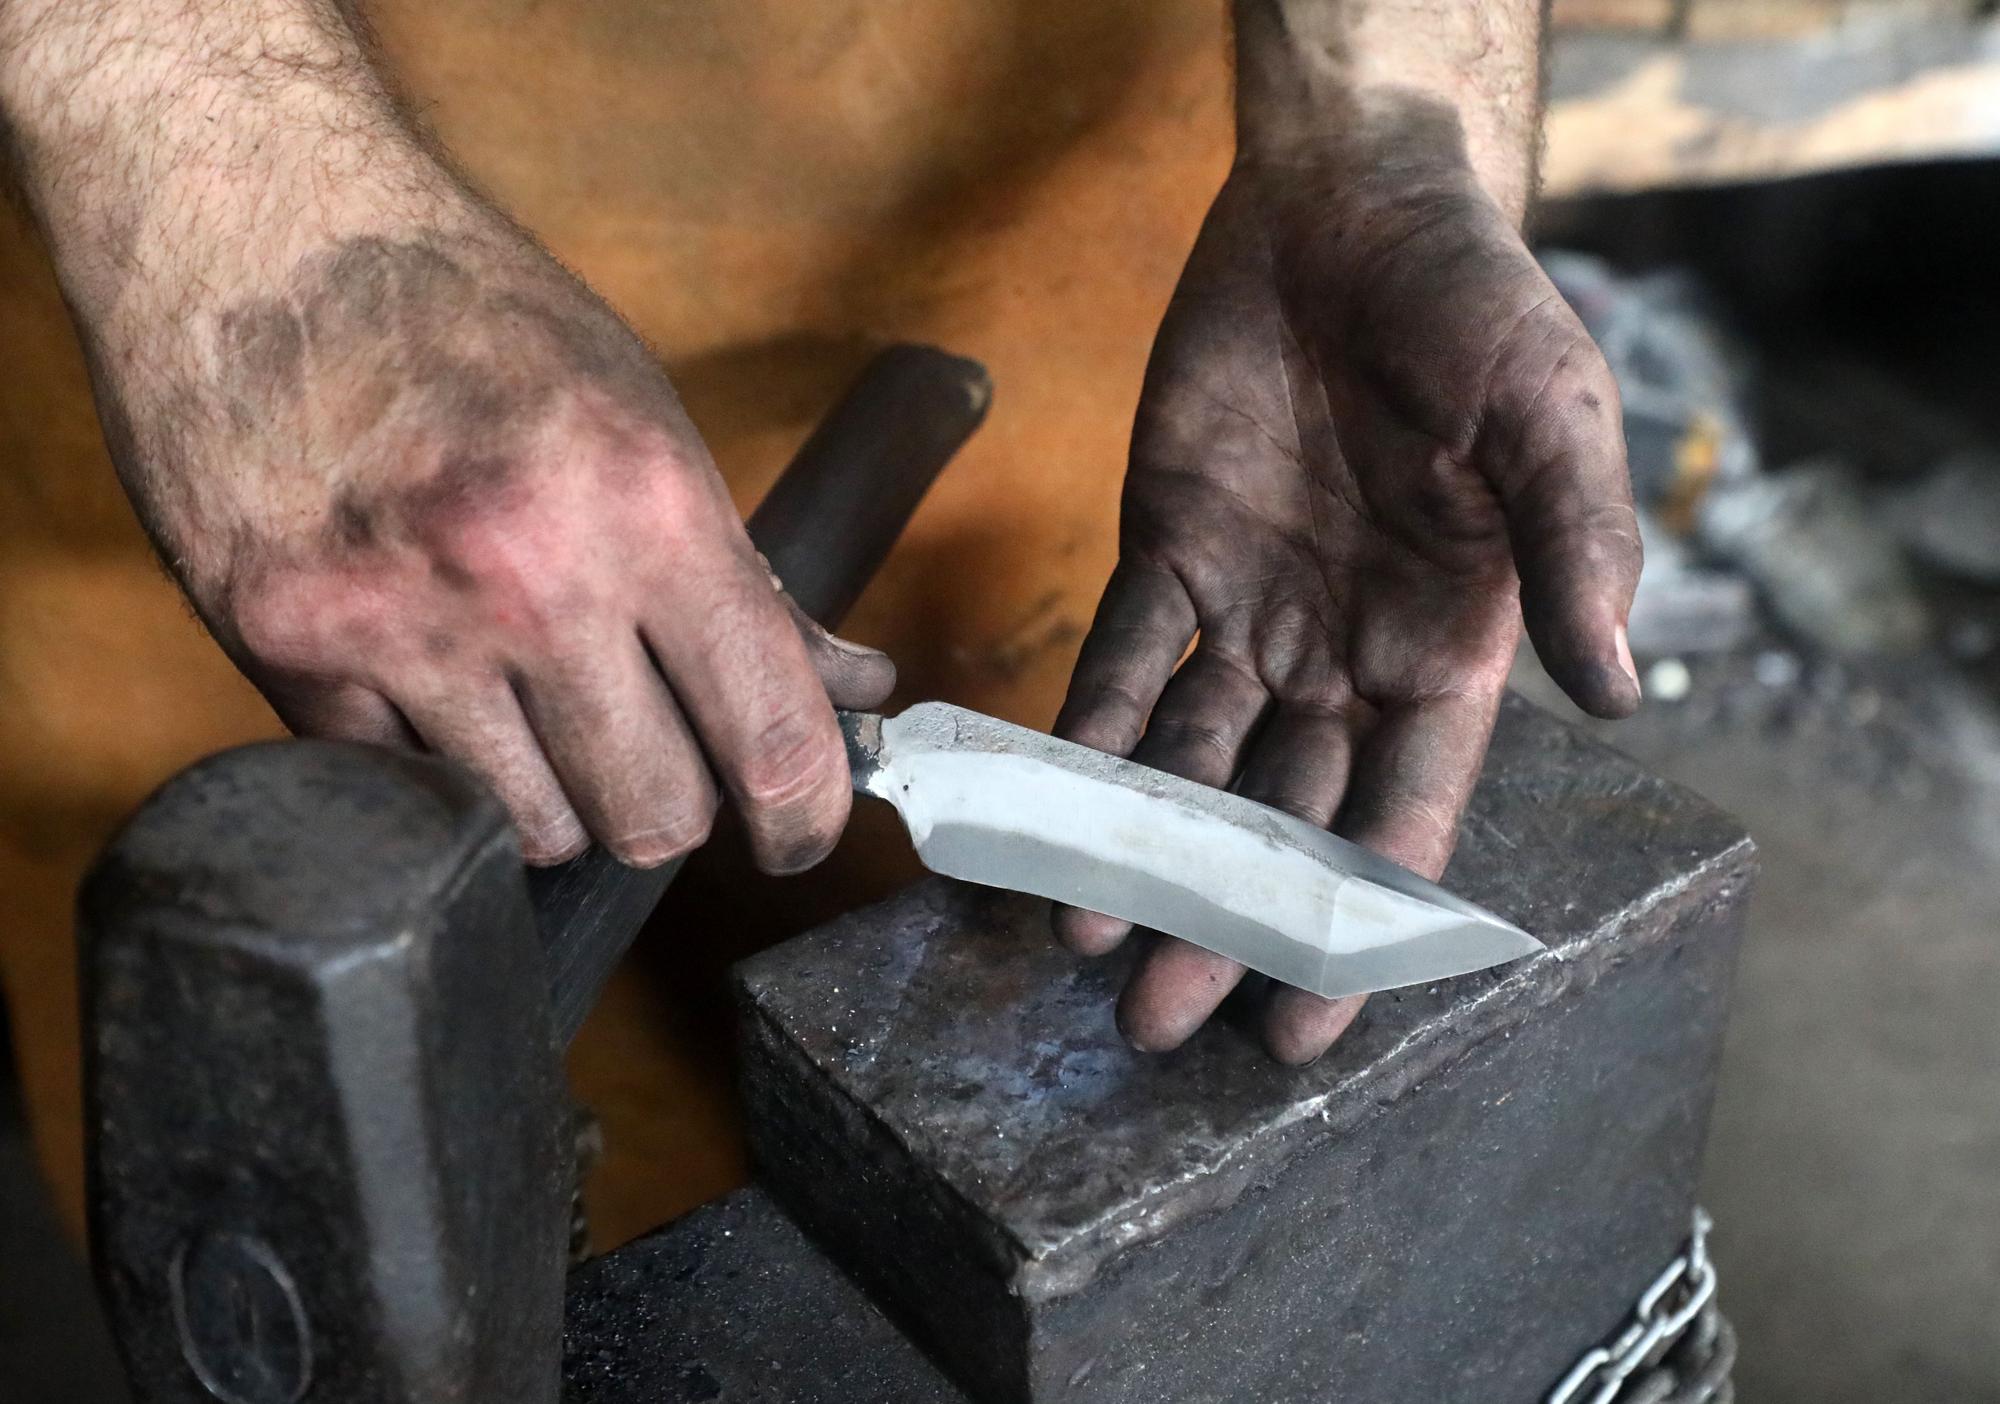 Los usos de los cuchillos de Álvaro son diversos, desde la cocina a la caza o el recuerdo.